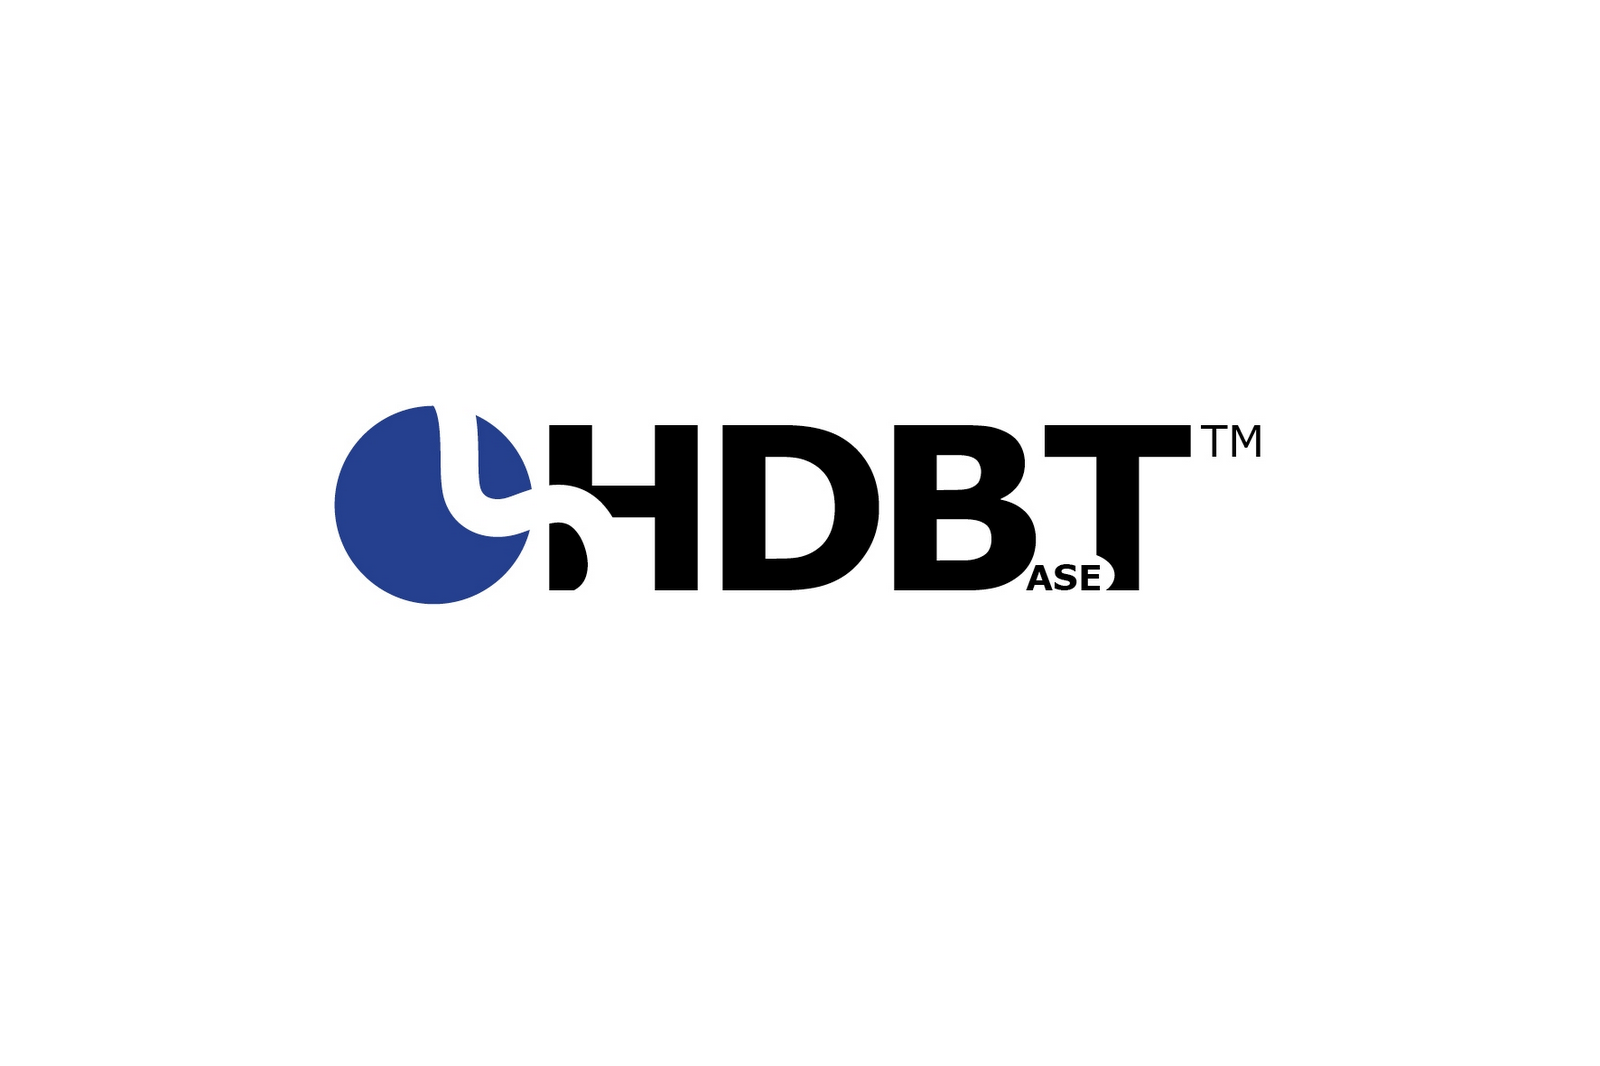 Lo que tienes que saber: breviario técnico sobre HDBaseT